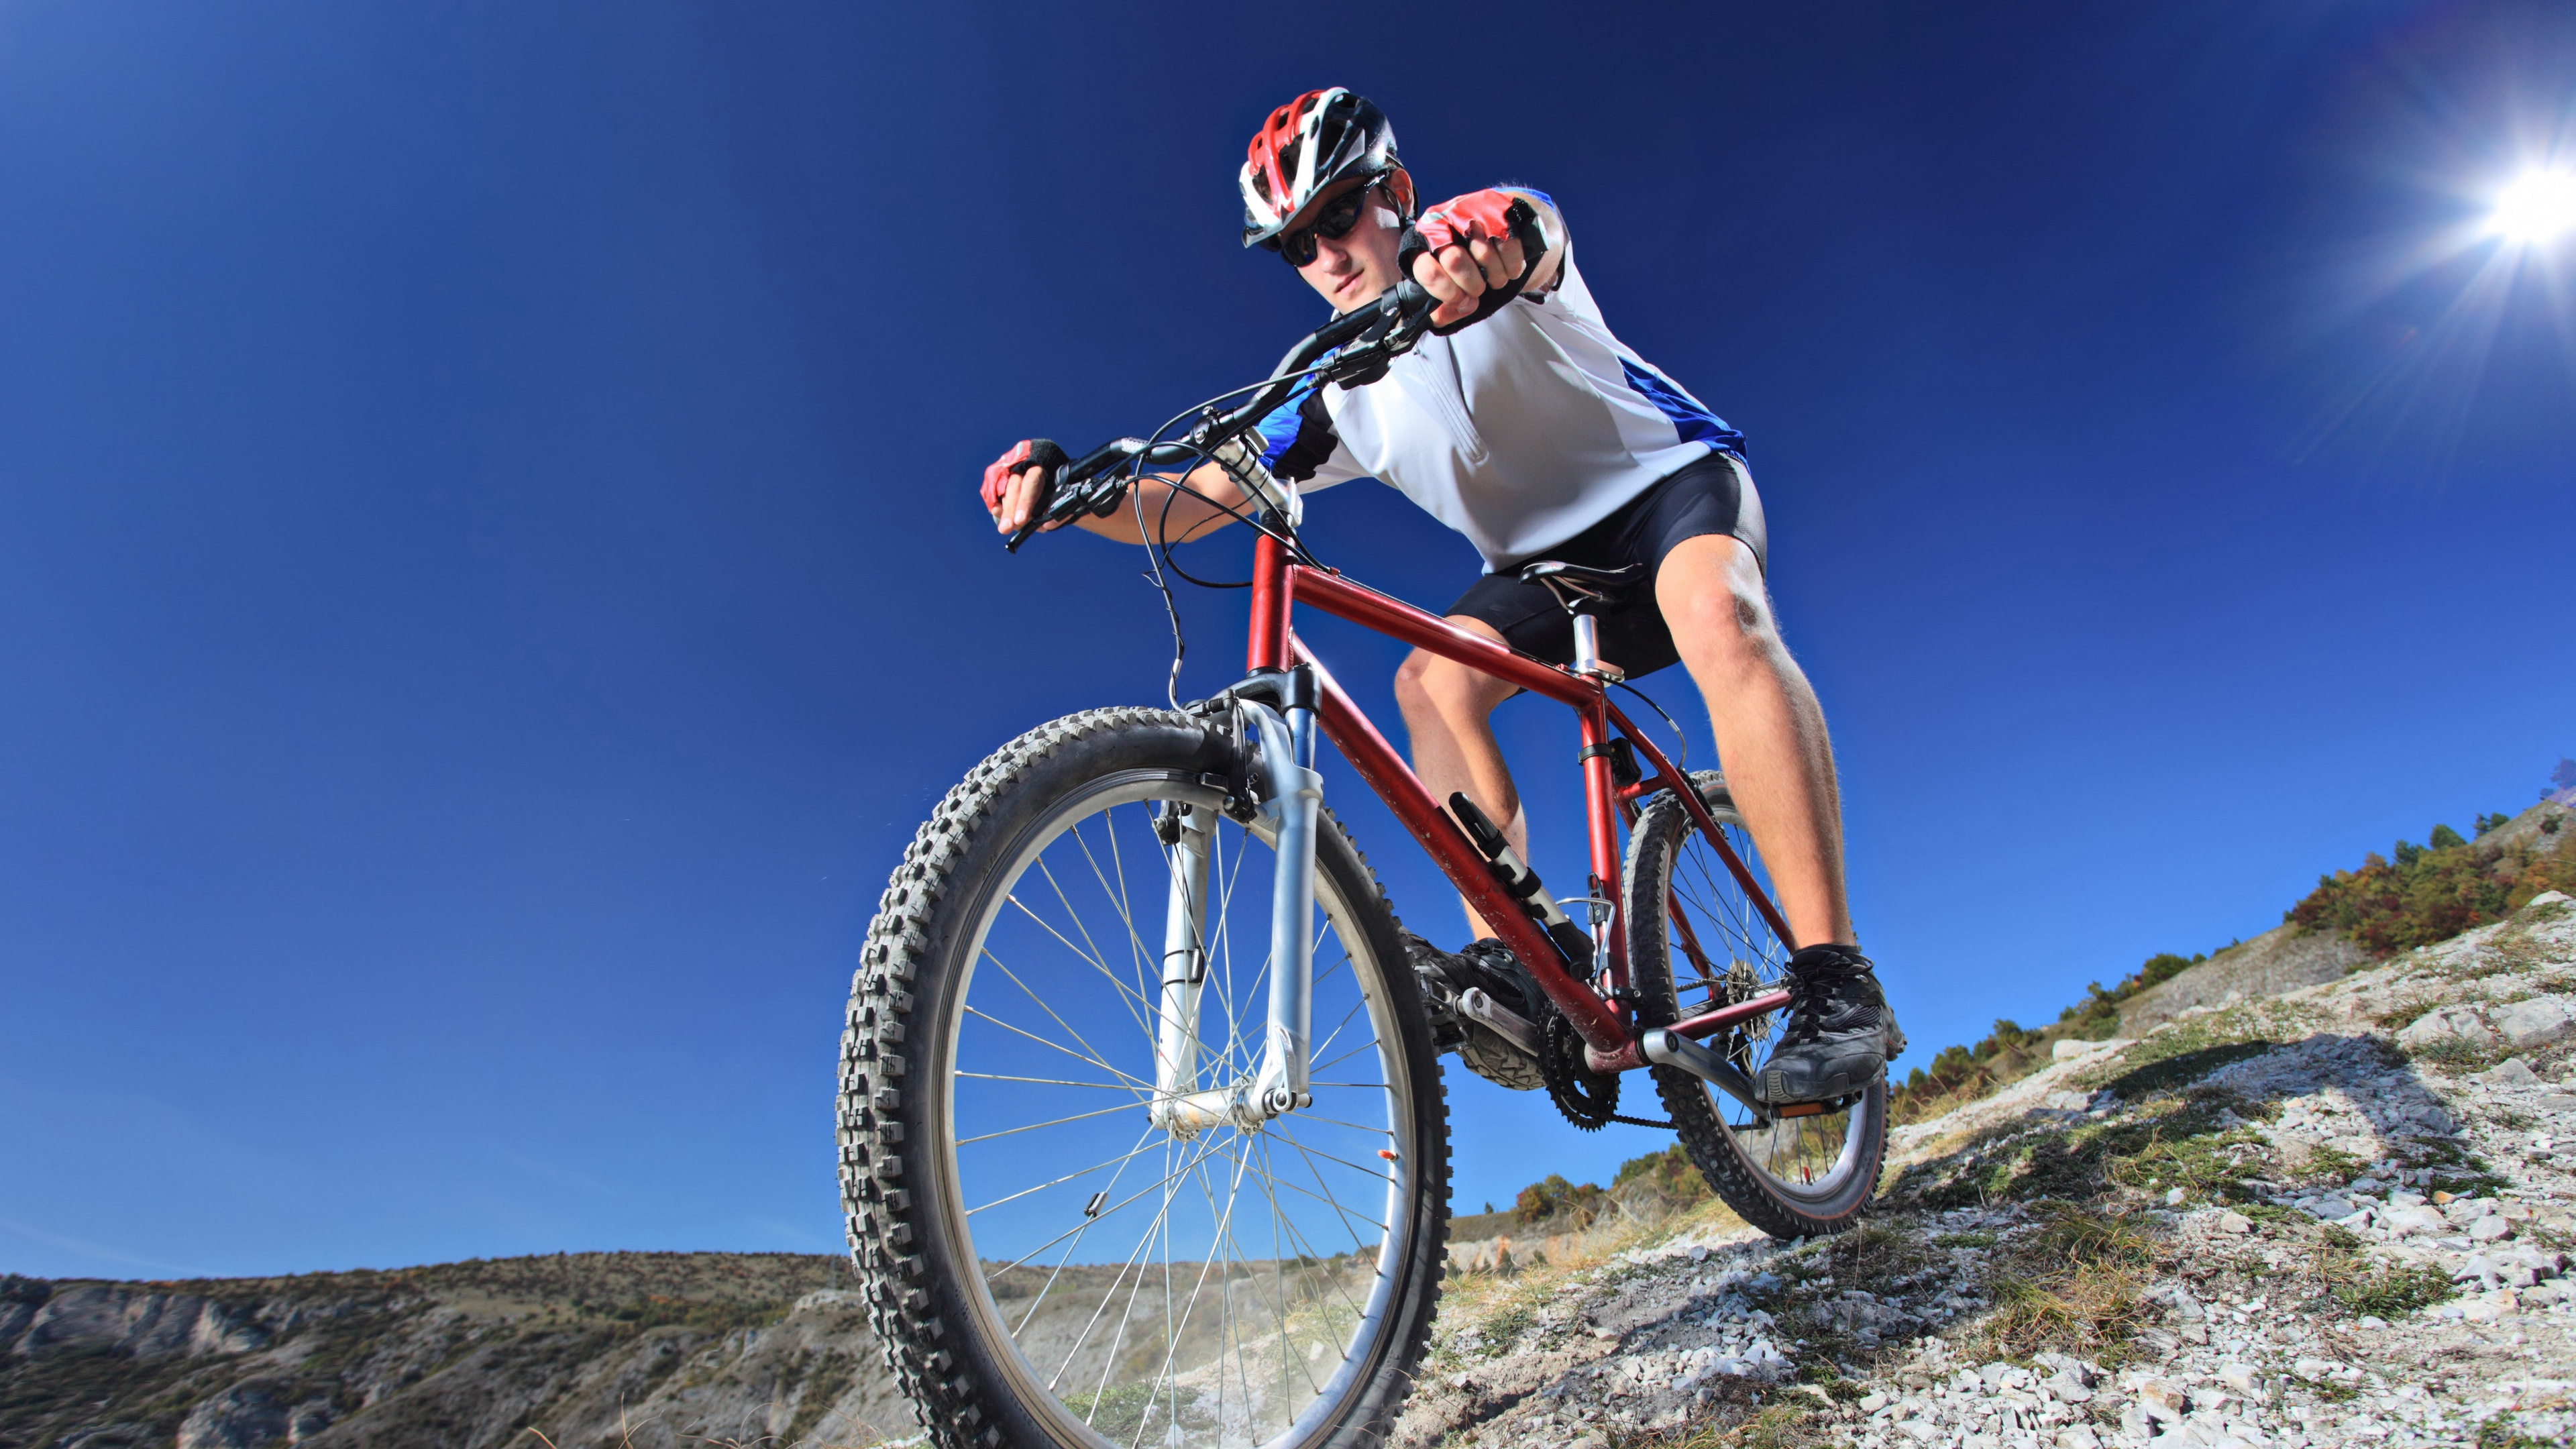 自行车, 高山山地自行车, 山地自行车, 骑自行车, 循环的运动 壁纸 3840x2160 允许